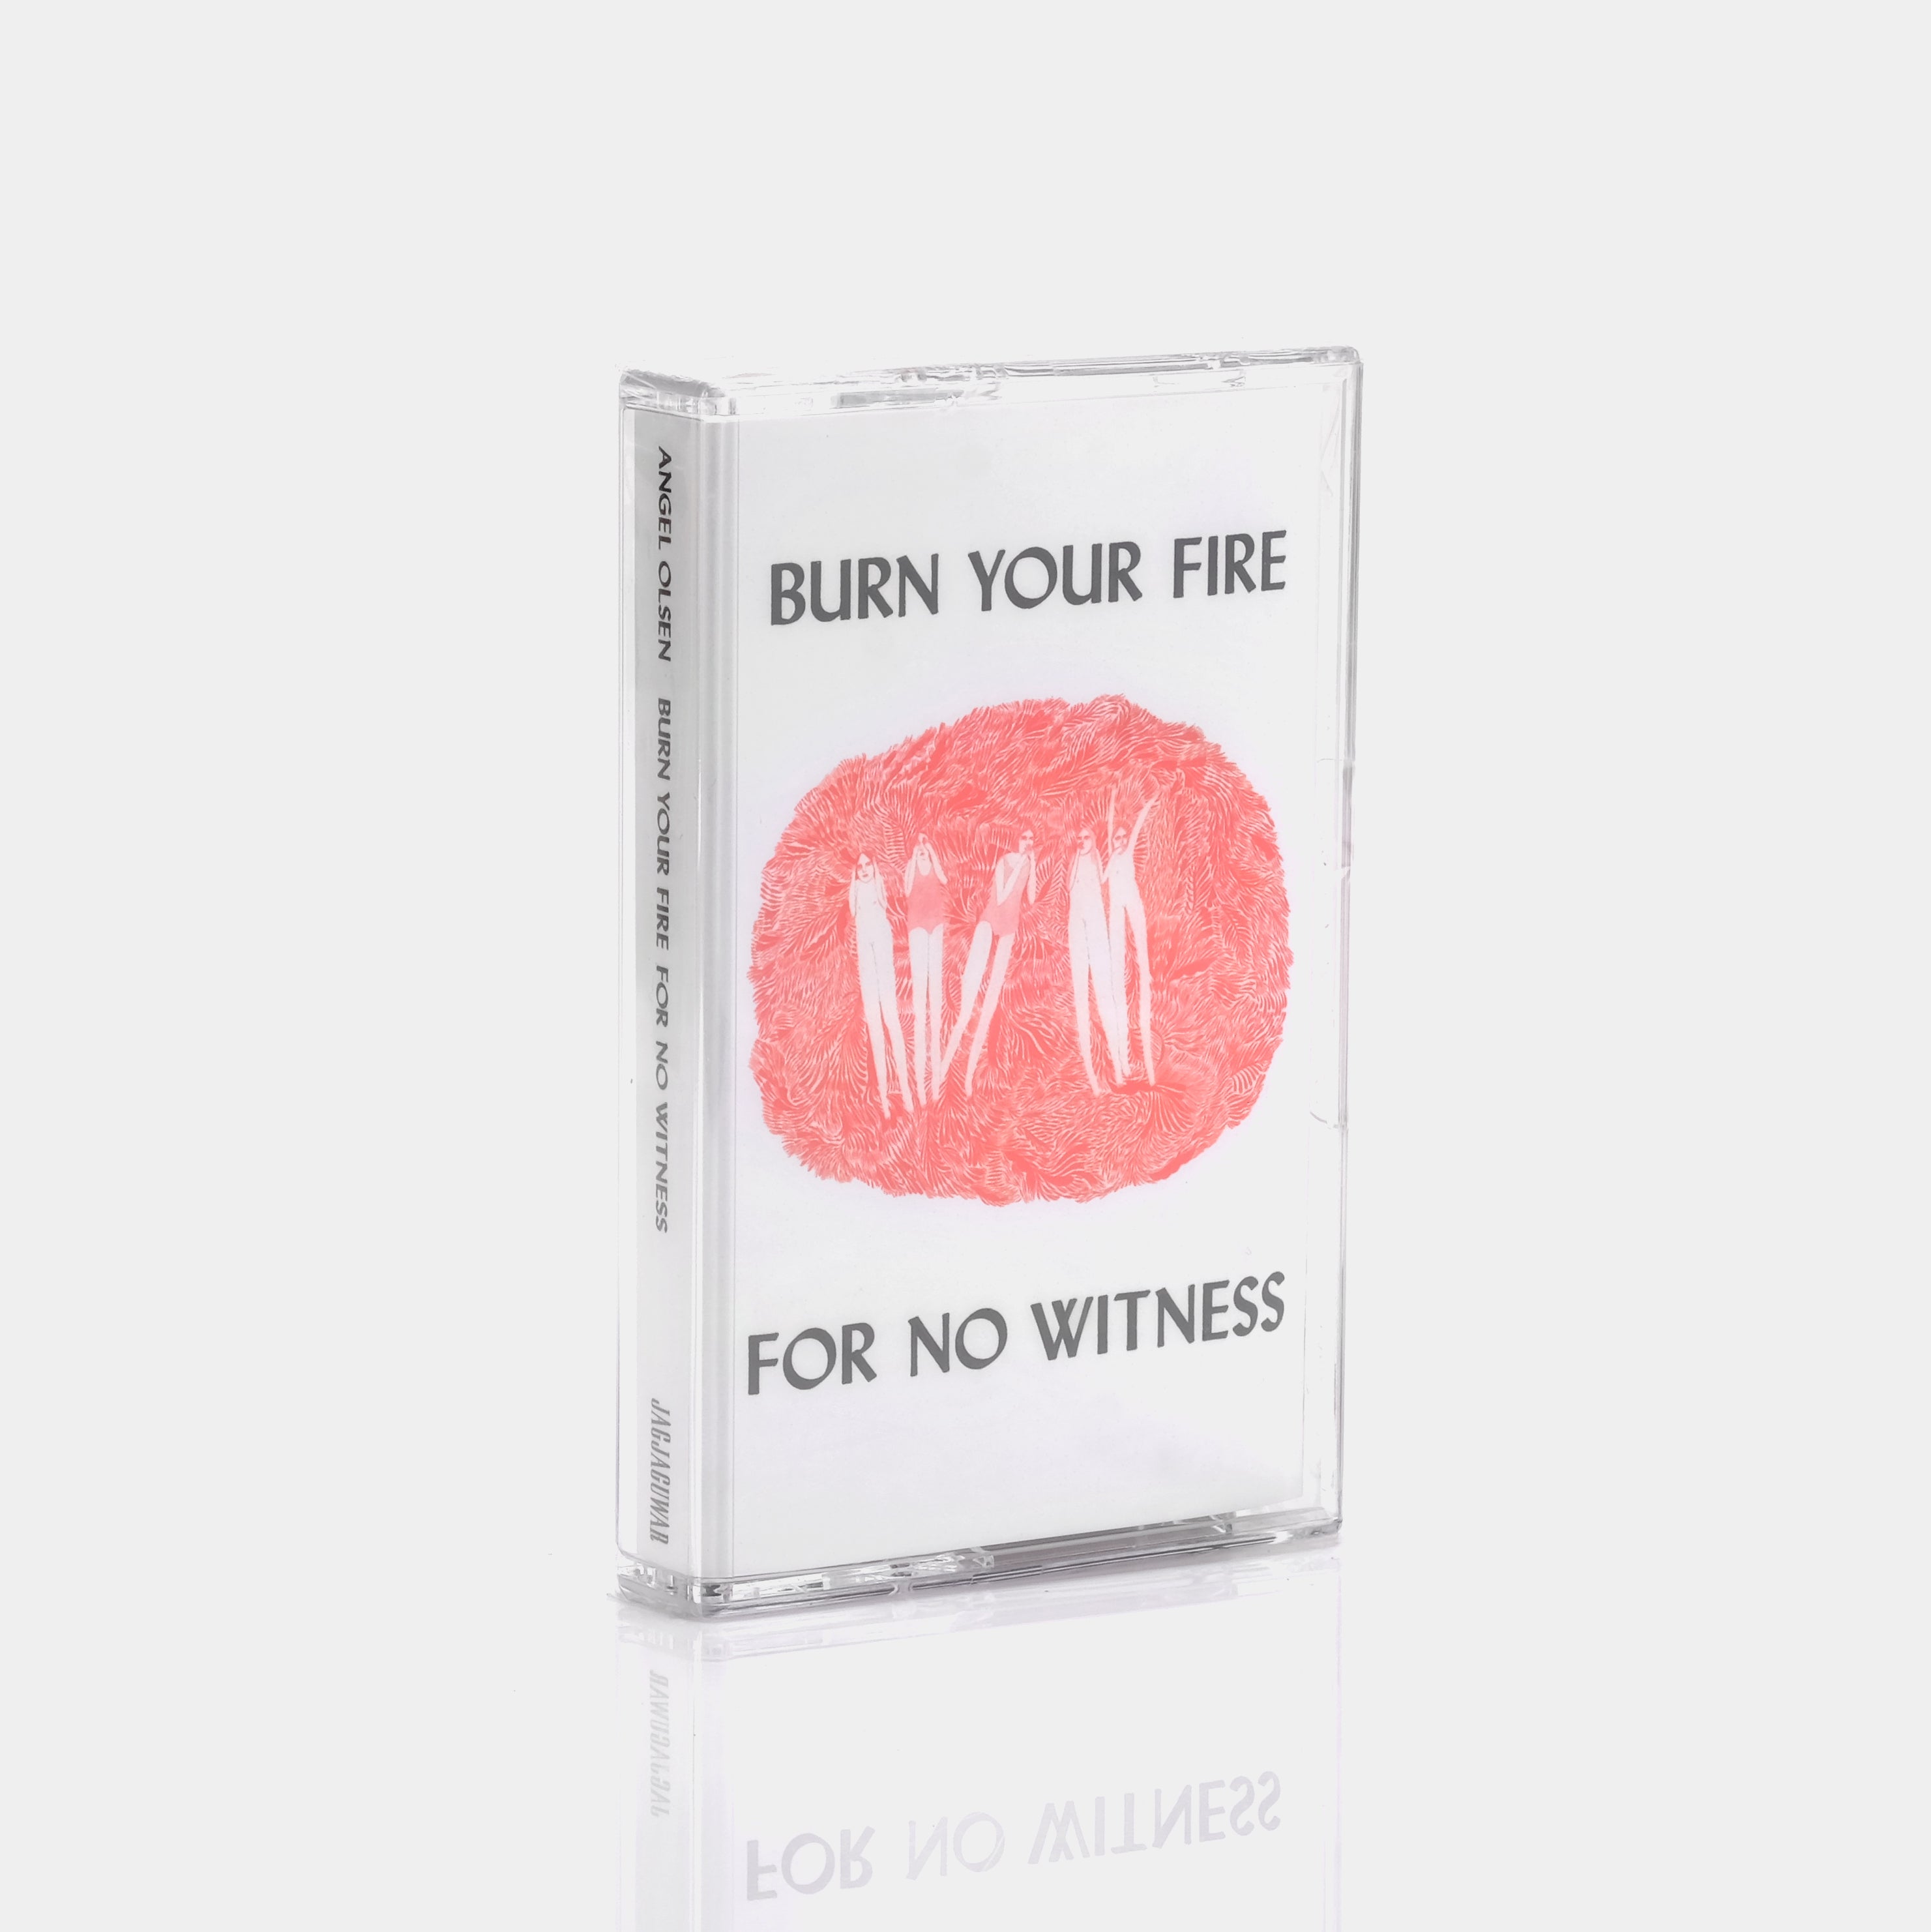 Angel Olsen - Burn Your Fire For No Witness Cassette Tape